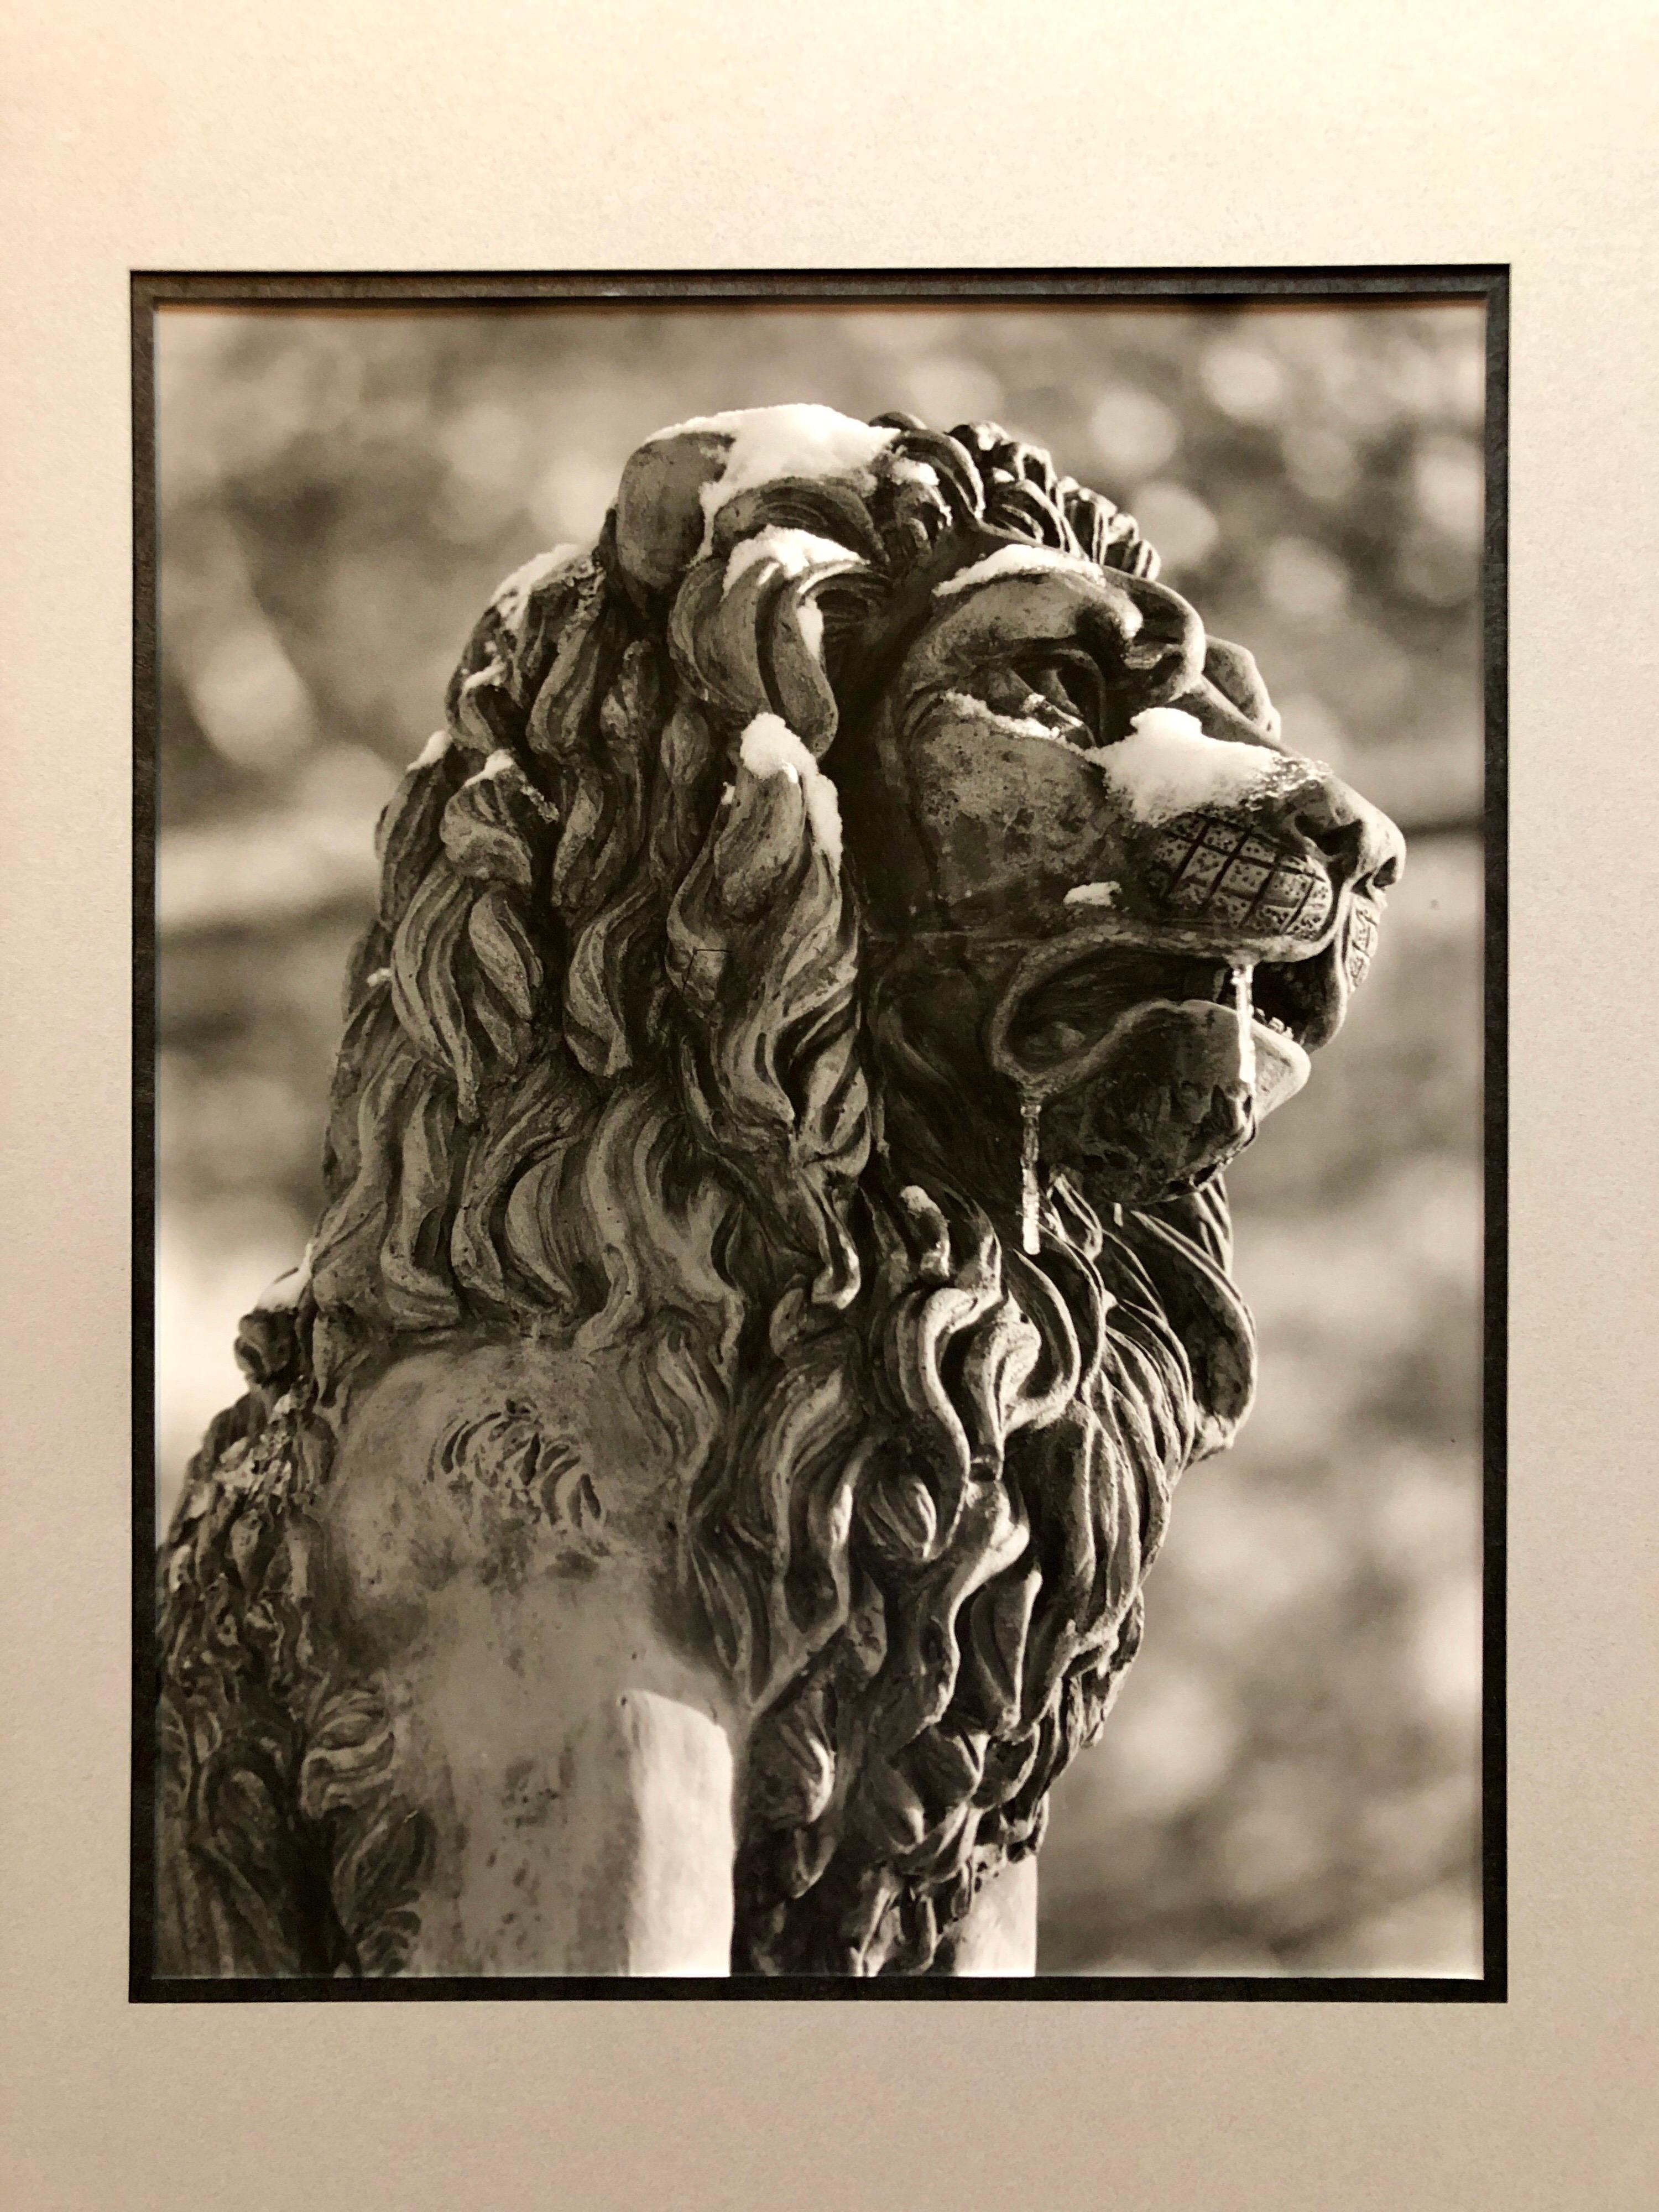 Photographie de sculpture de lion en pierre, Jérusalem Tirage photo gélatino-argentique vintage